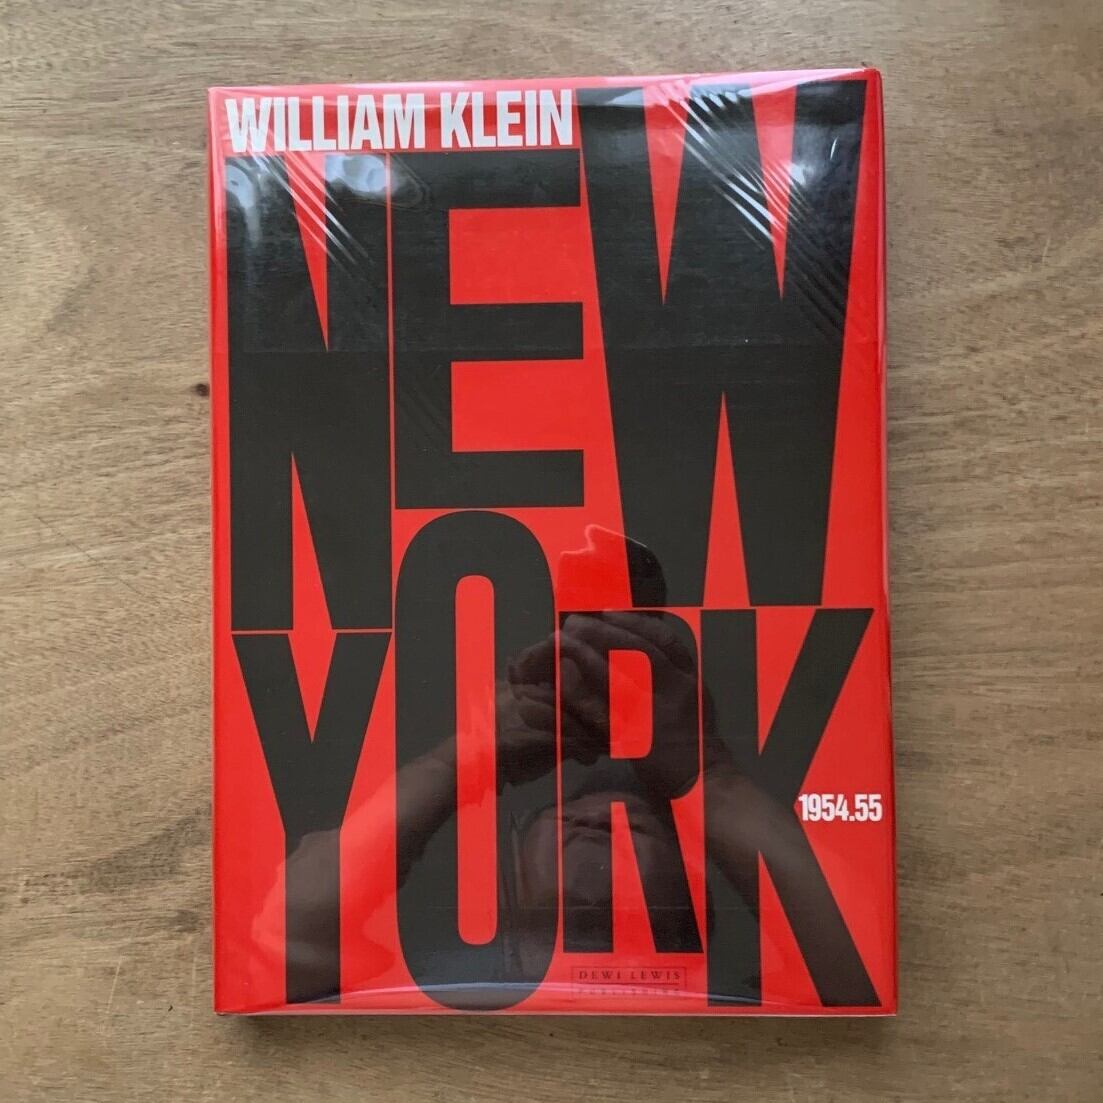 NEW YORK 1954.55 WILLIAM KLEIN / ウィリアム・クライン 写真集 | 本まるさんかくしかく powered by BASE